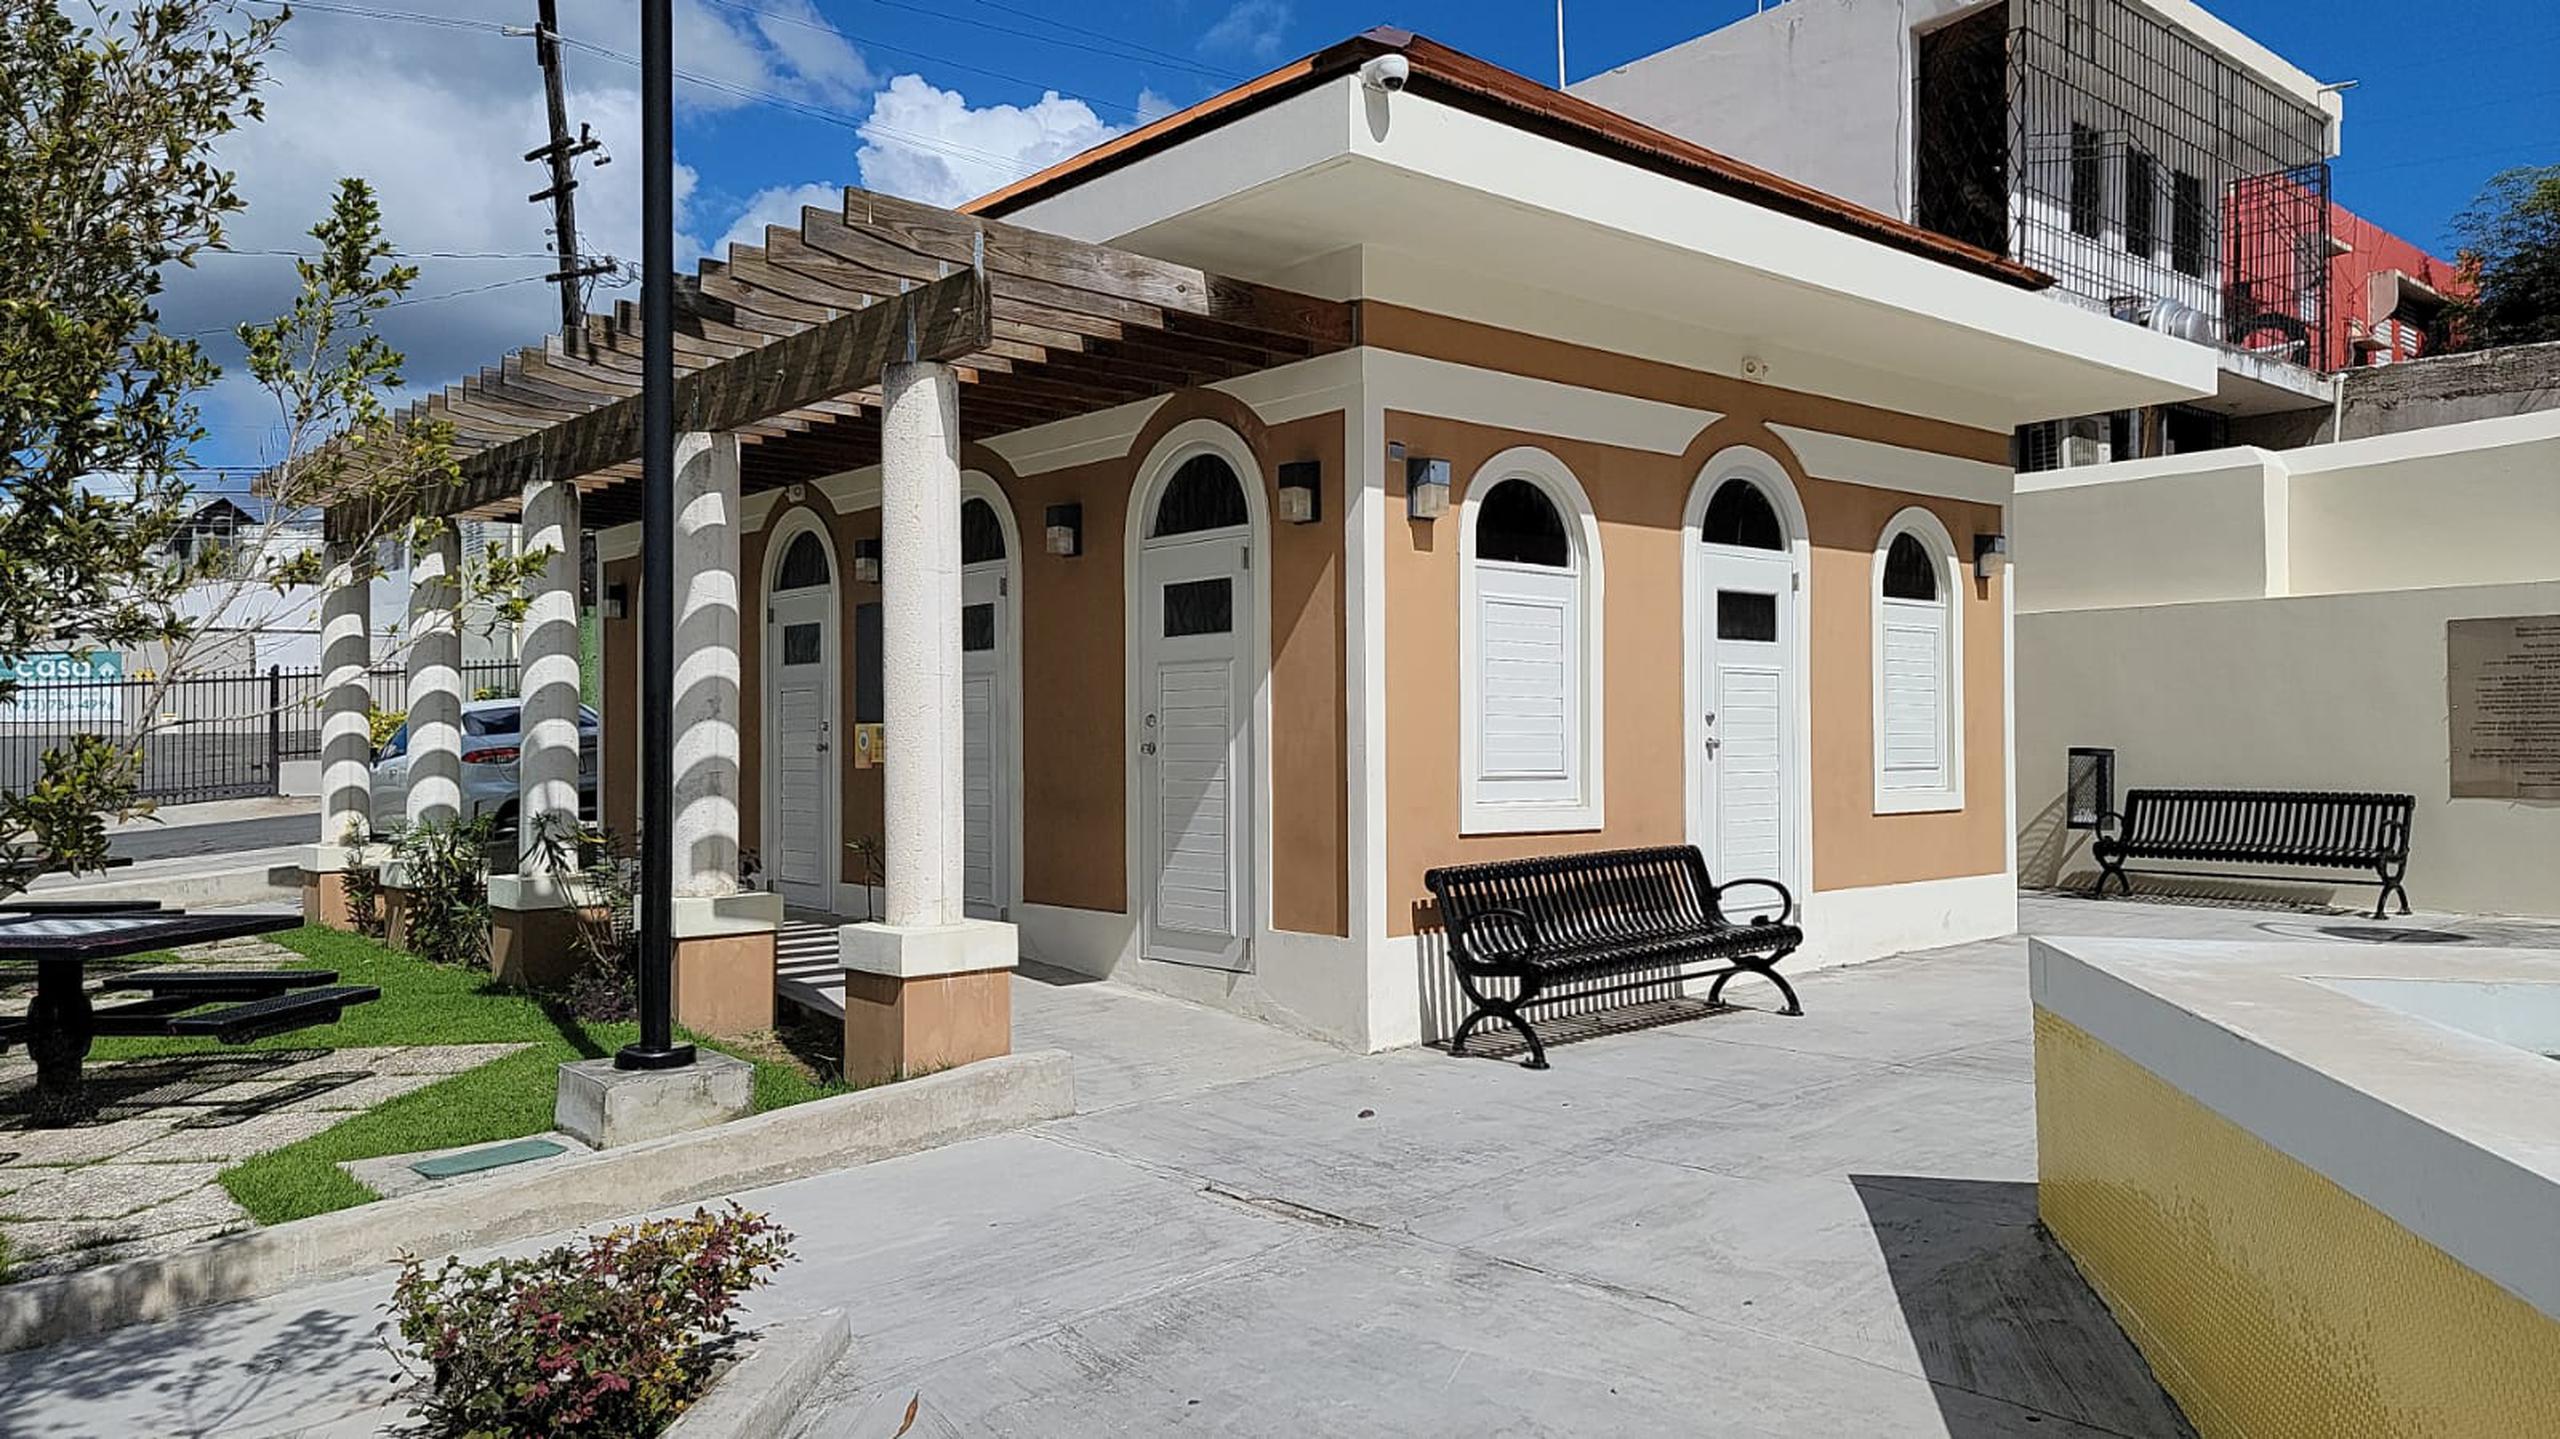 El alcalde Alberio Ramos estableció que el lugar donde ubicaba el museo era originalmente la sala de espera del terminal de carros públicos de San Lorenzo, que al ser construido con fondos federales debía destinarse a esos fines.